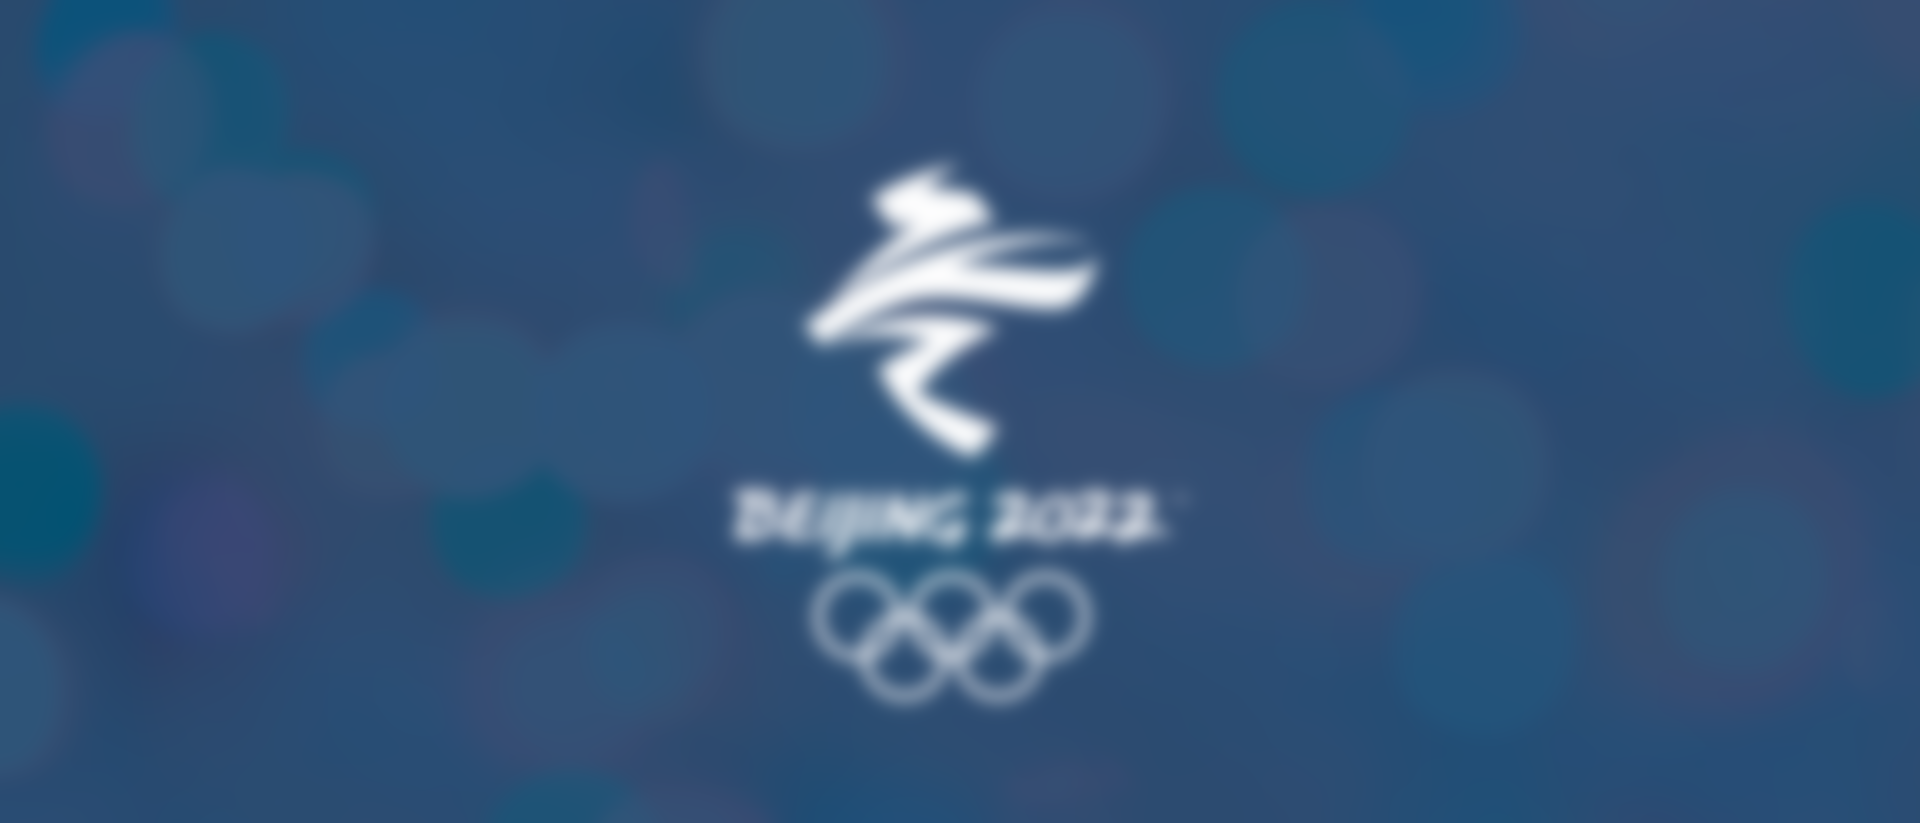 بكين 2022 | الألعاب الأولمبية الشتوية